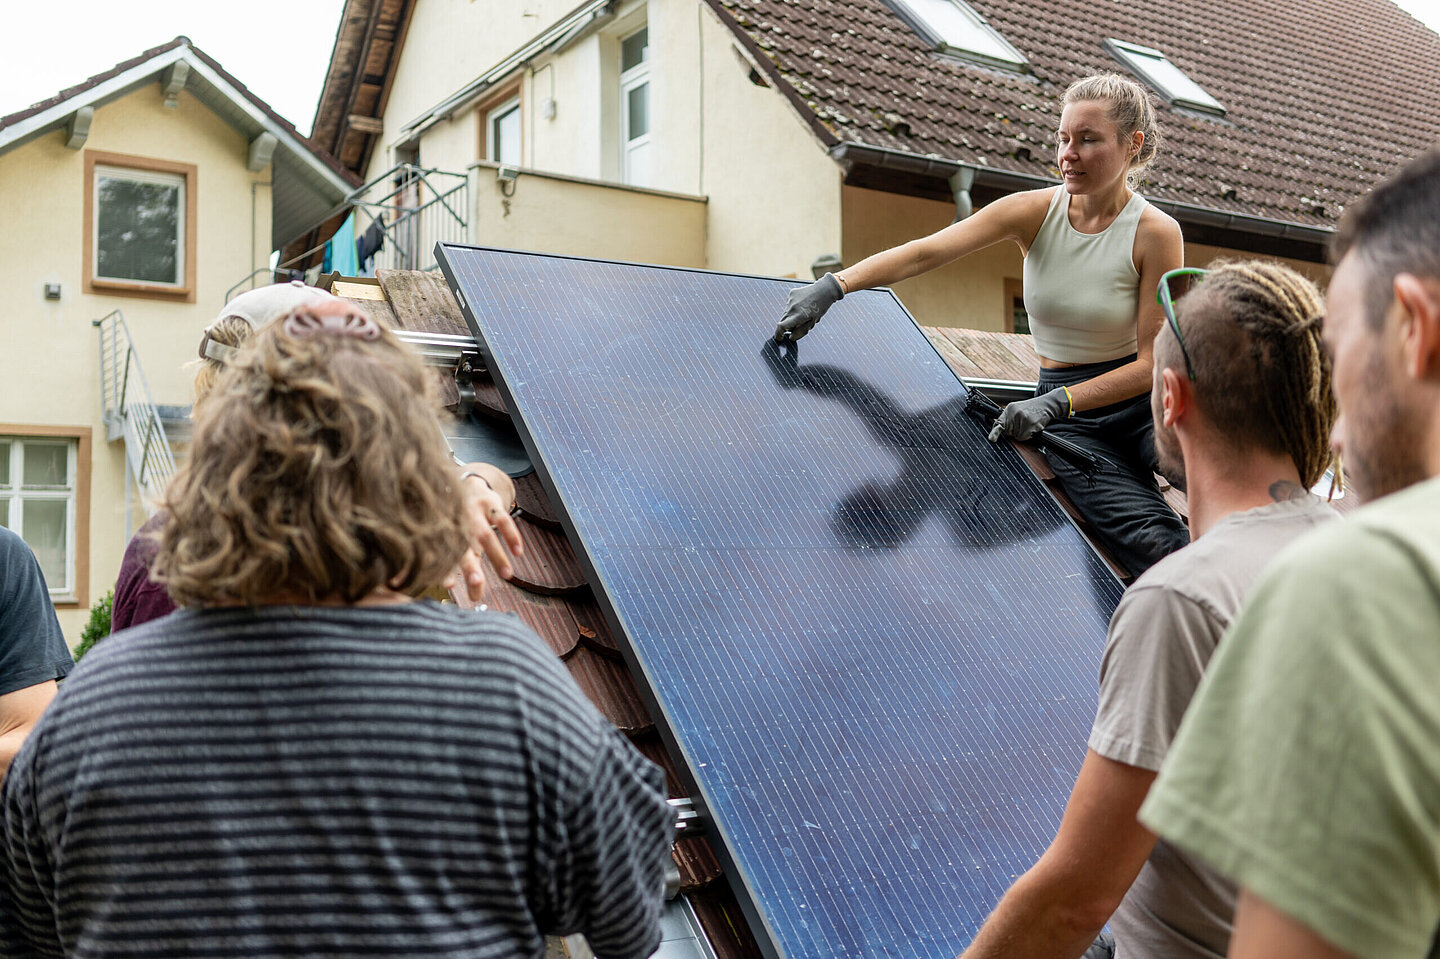 Eine Frau befestigt ein PV-Modul auf einem Dach, Personen schauen ihr zu.